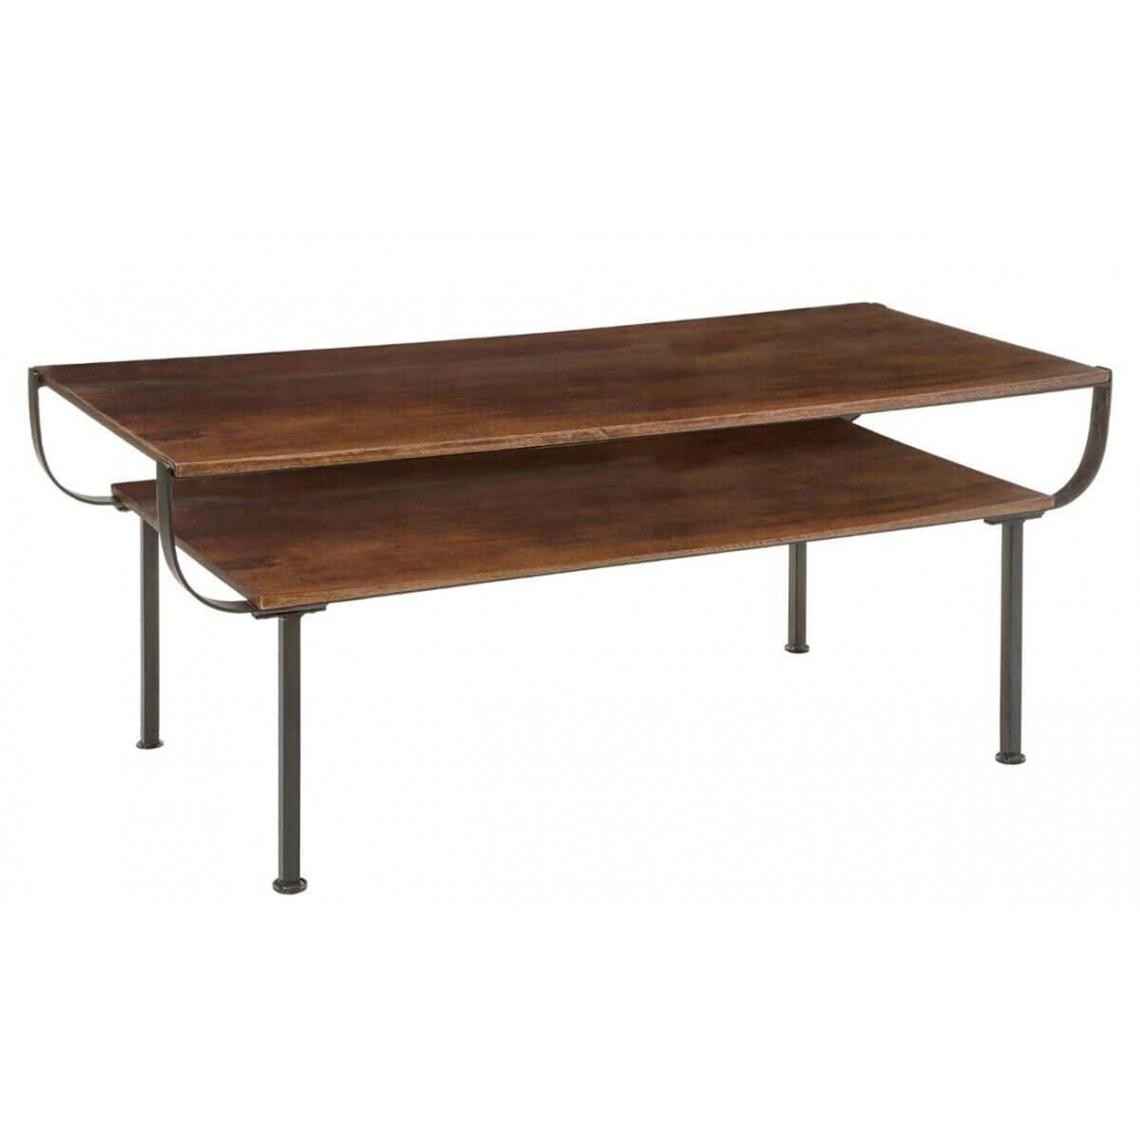 Pegane - Table basse en acier et manguier coloris marron - Longueur 121.5 x Hauteur 50 x Profondeur 51 cm - Tables basses